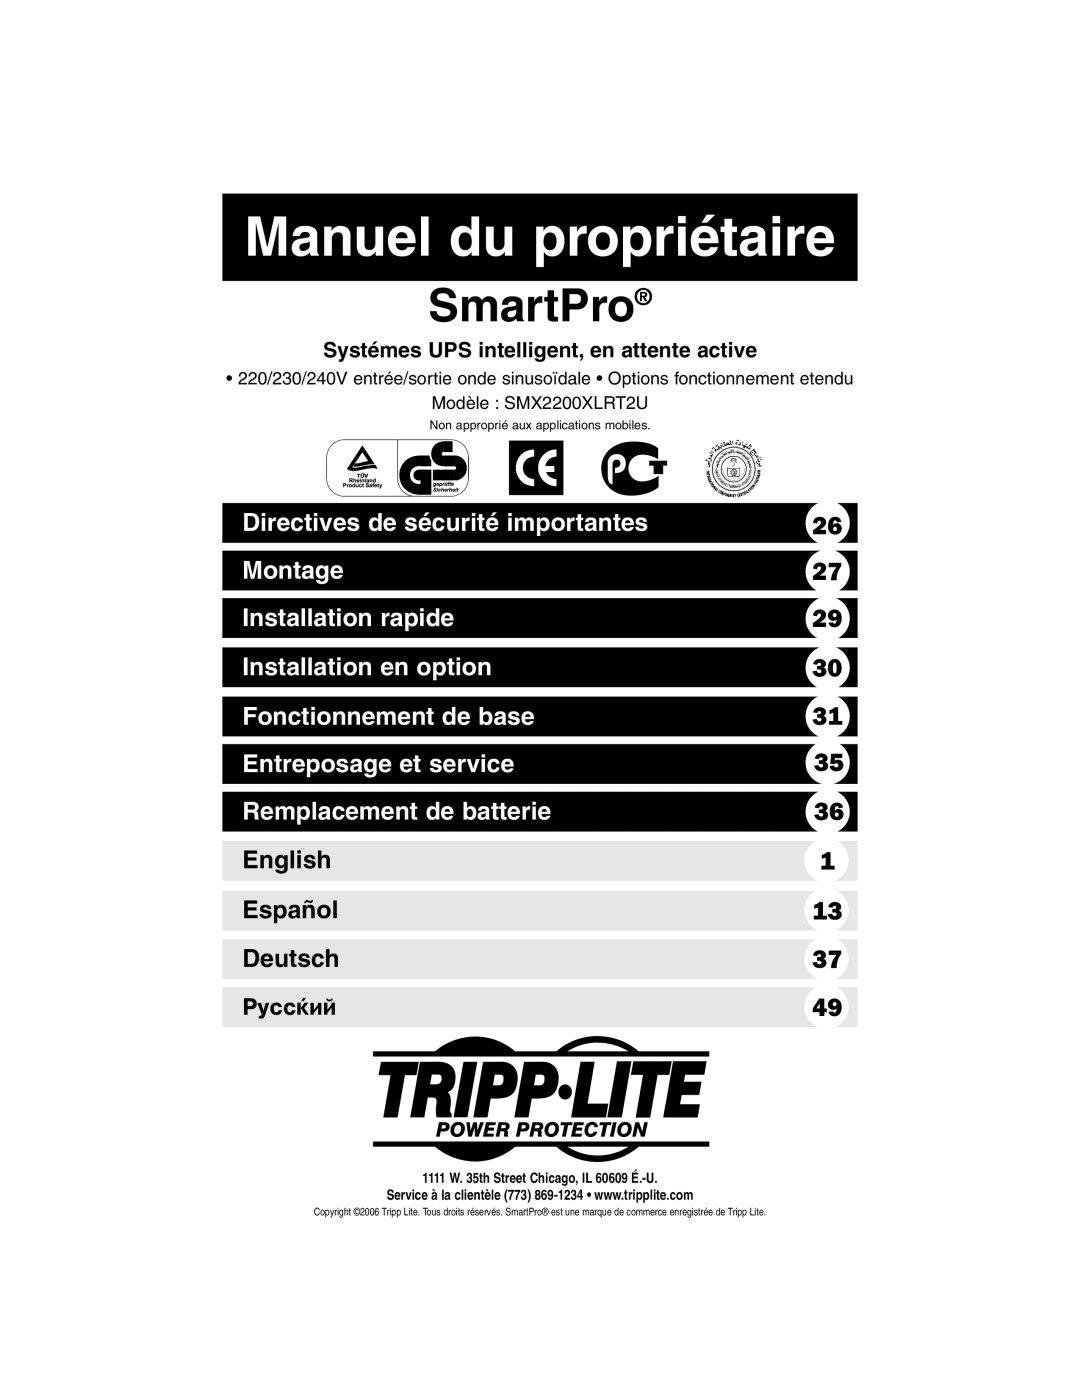 Tripp Lite SMX2200XLRT2U Manuel du propriétaire, Directives de sécurité importantes, Montage, Installation rapide, English 